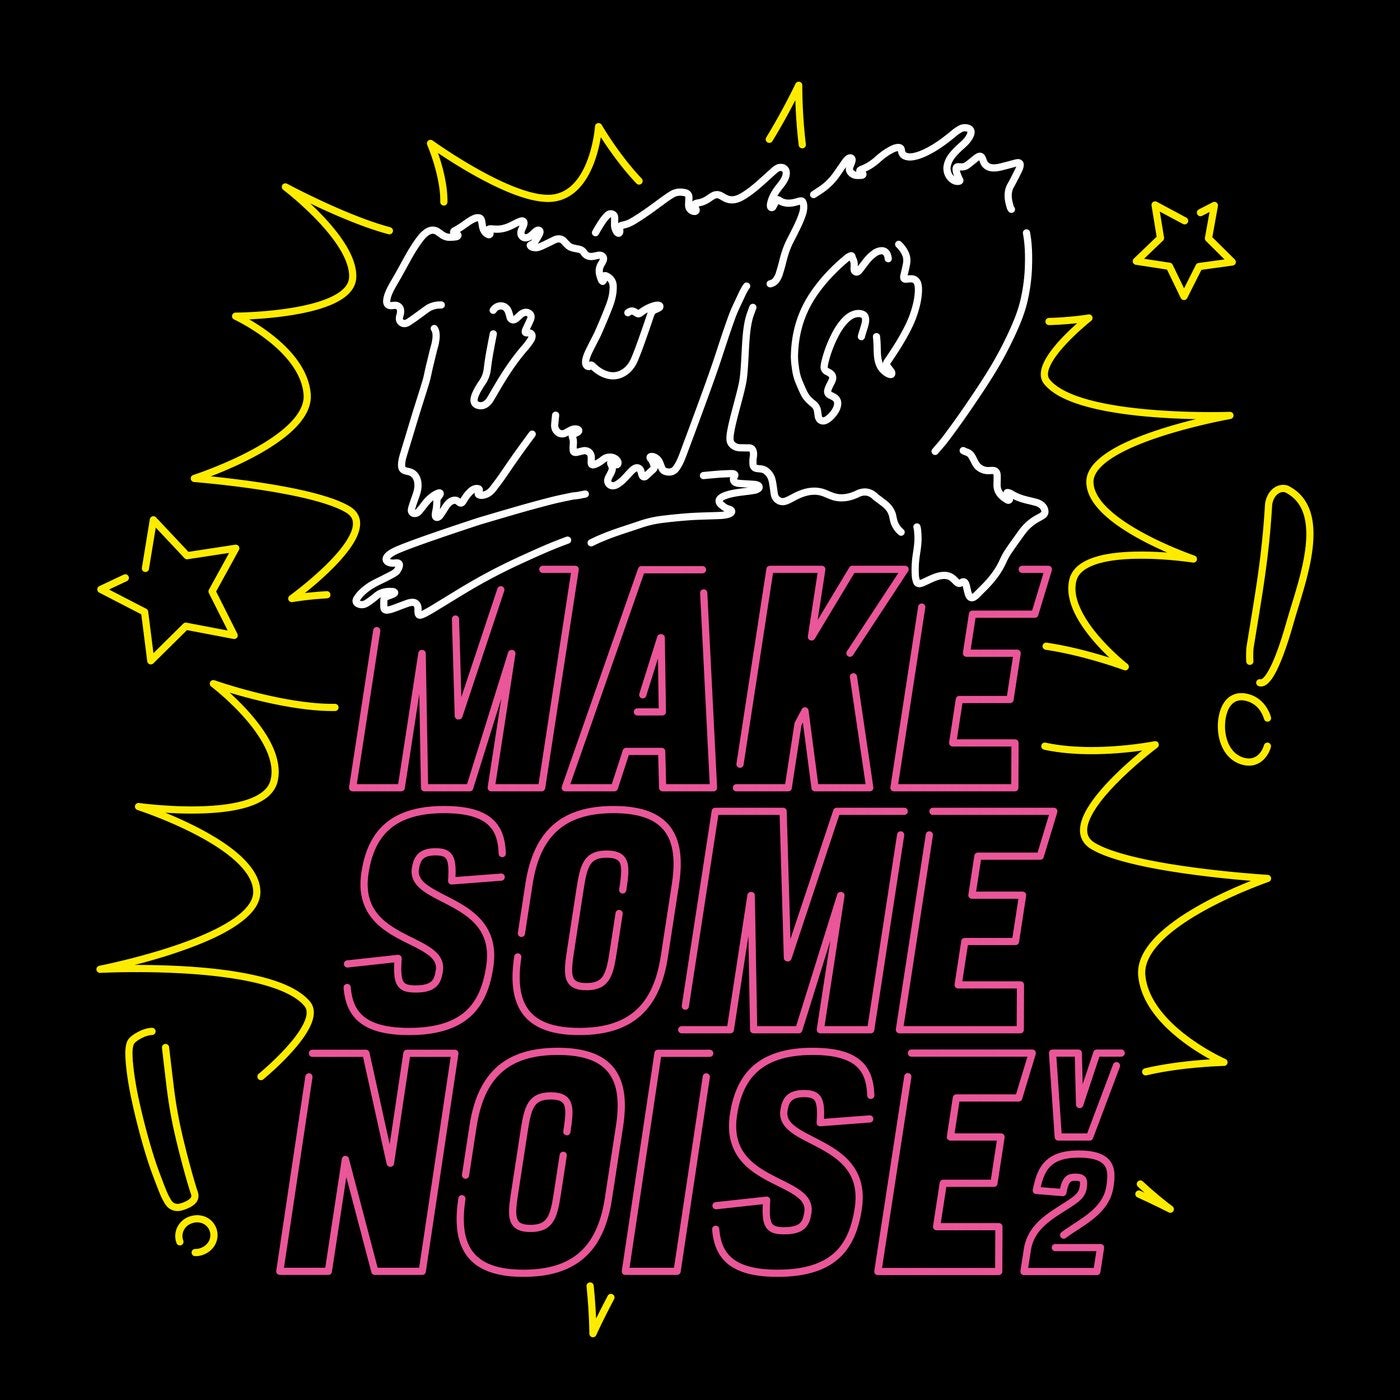 Make Some Noise v2